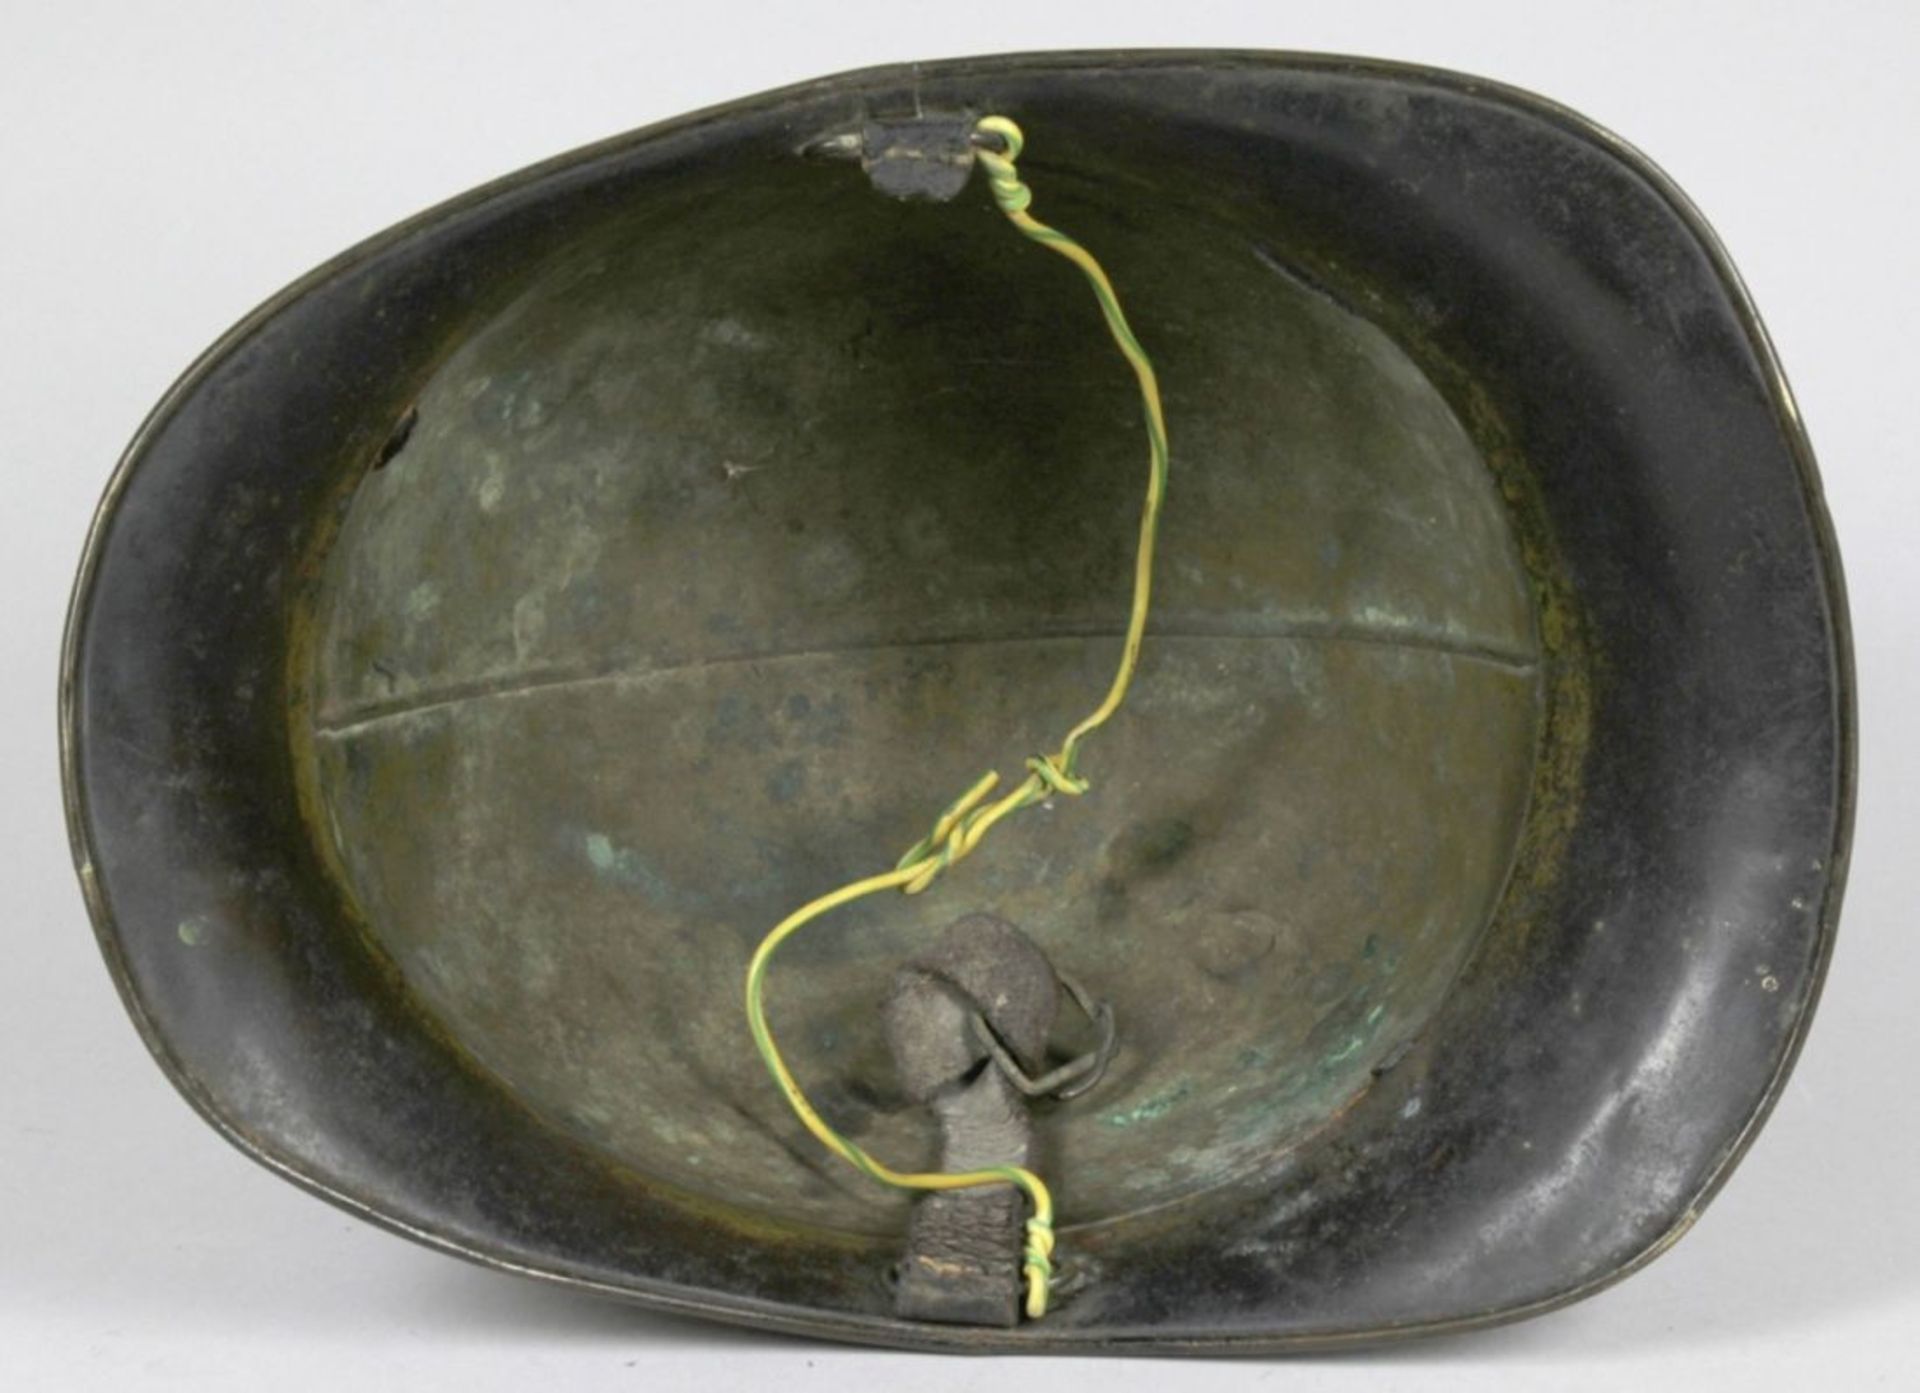 Feuerwehr-Helm, 19. Jh., Messing, H 20 cm, teilw. mit Dellen und Bruchstellen, gebrauchterZusta - Bild 3 aus 3